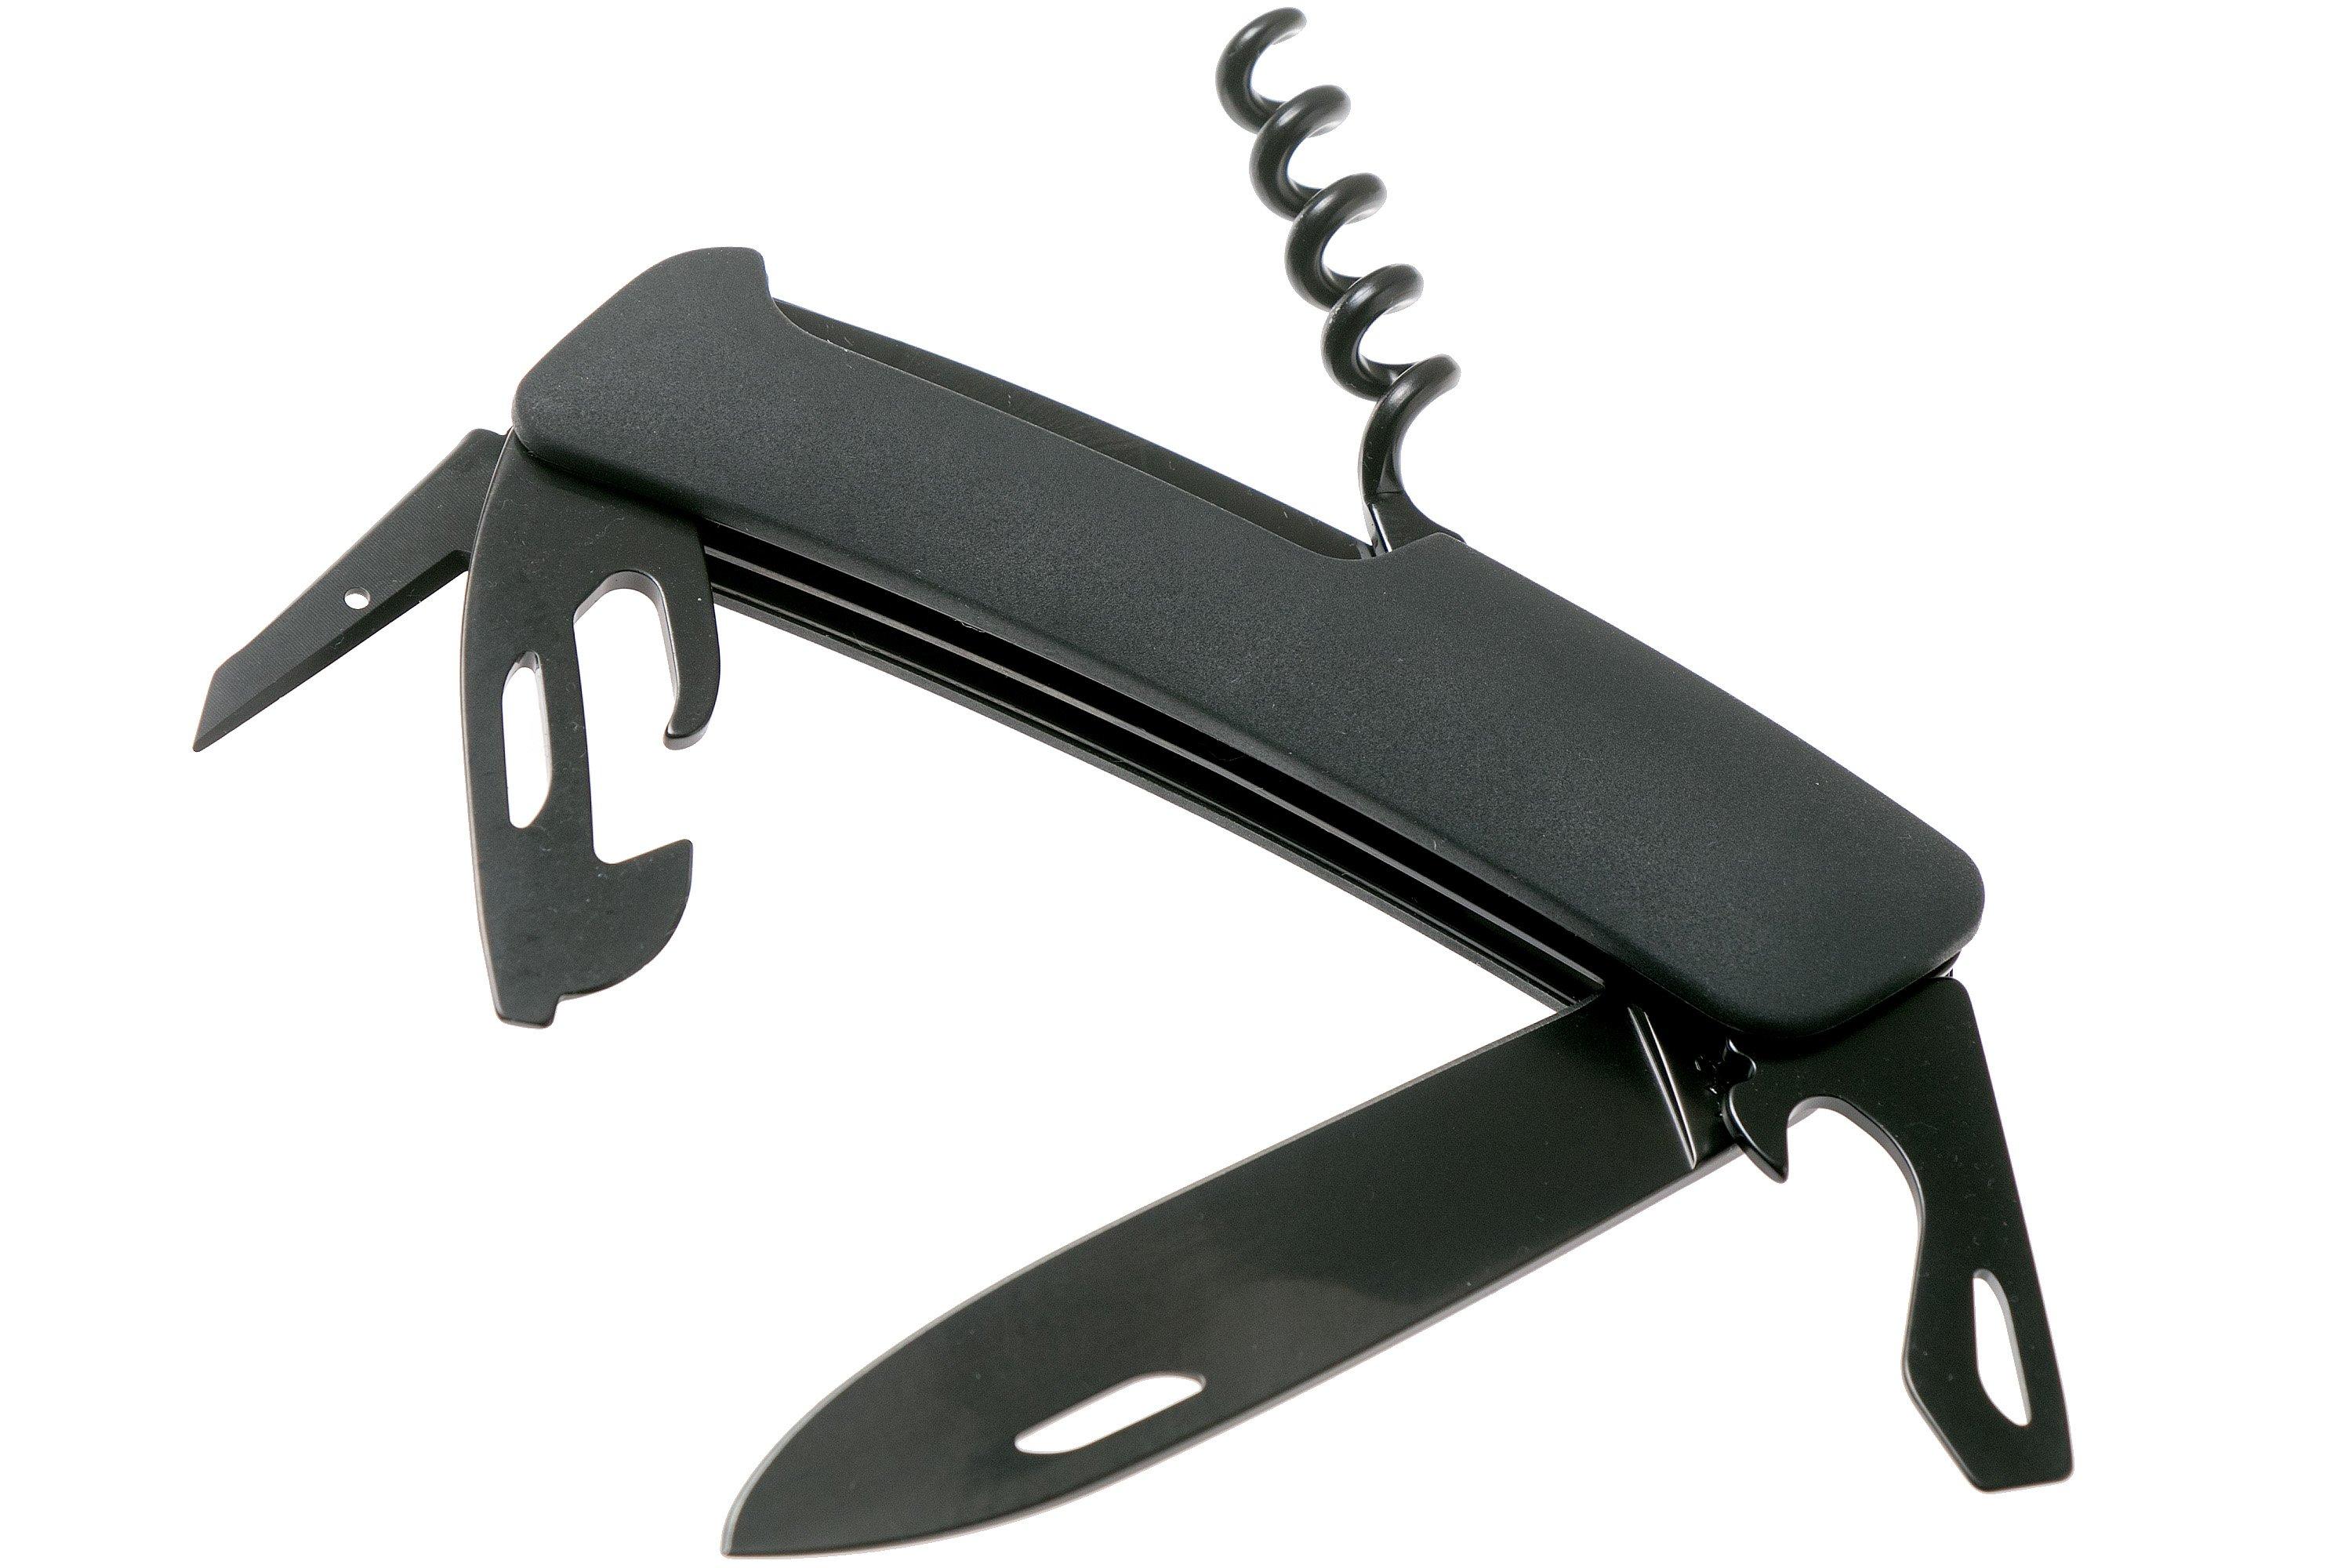  D03 Allblack couteau suisse, noir | Achetez à prix avantageux .